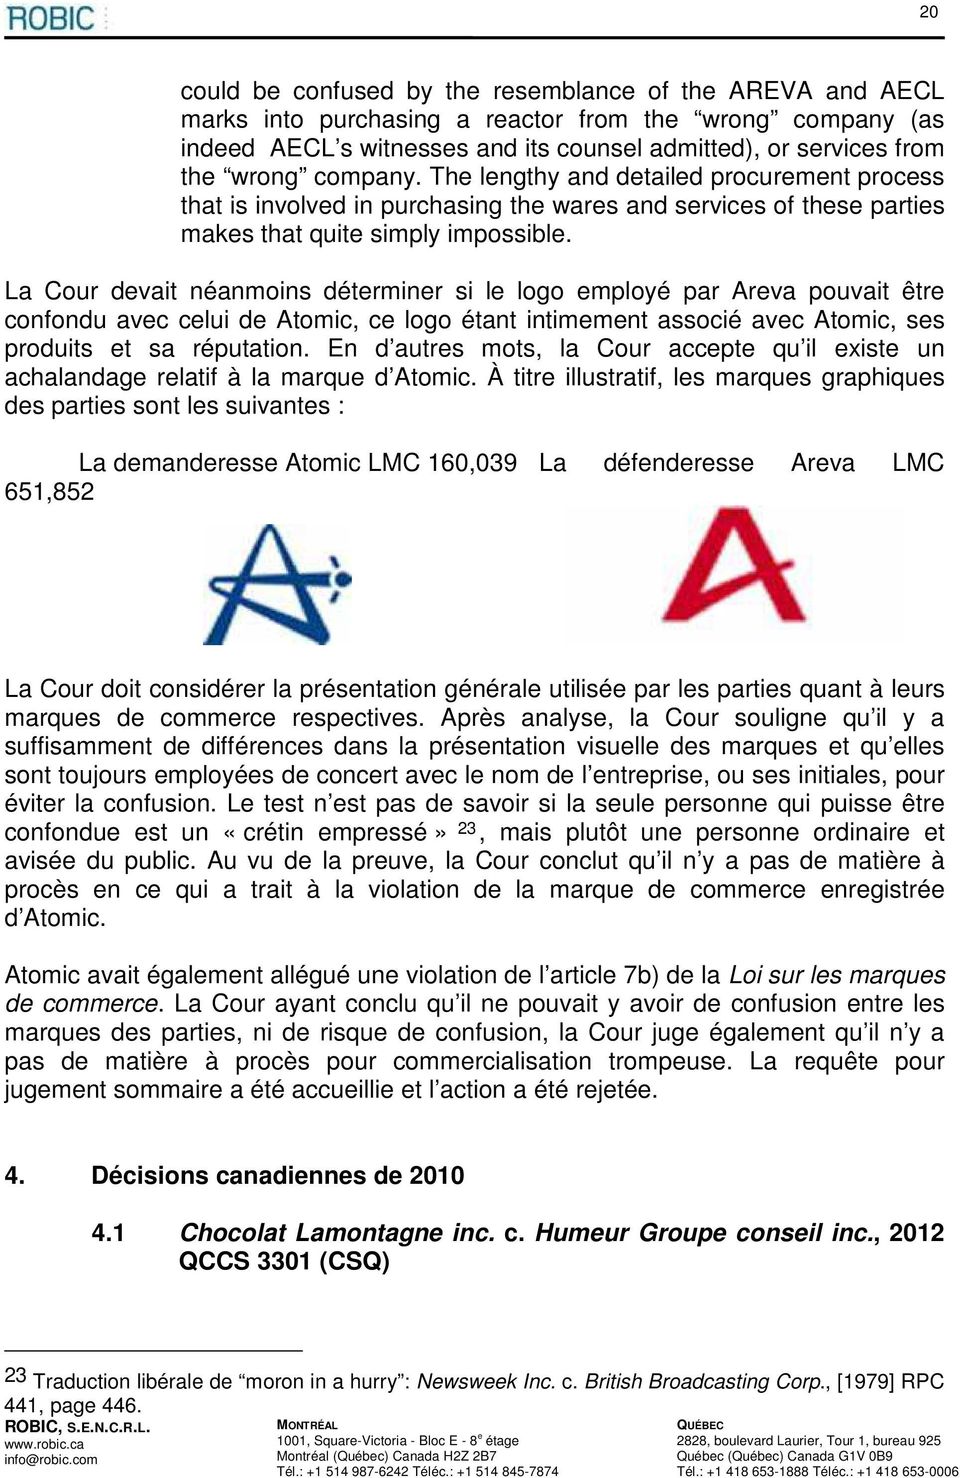 La Cour devait néanmoins déterminer si le logo employé par Areva pouvait être confondu avec celui de Atomic, ce logo étant intimement associé avec Atomic, ses produits et sa réputation.